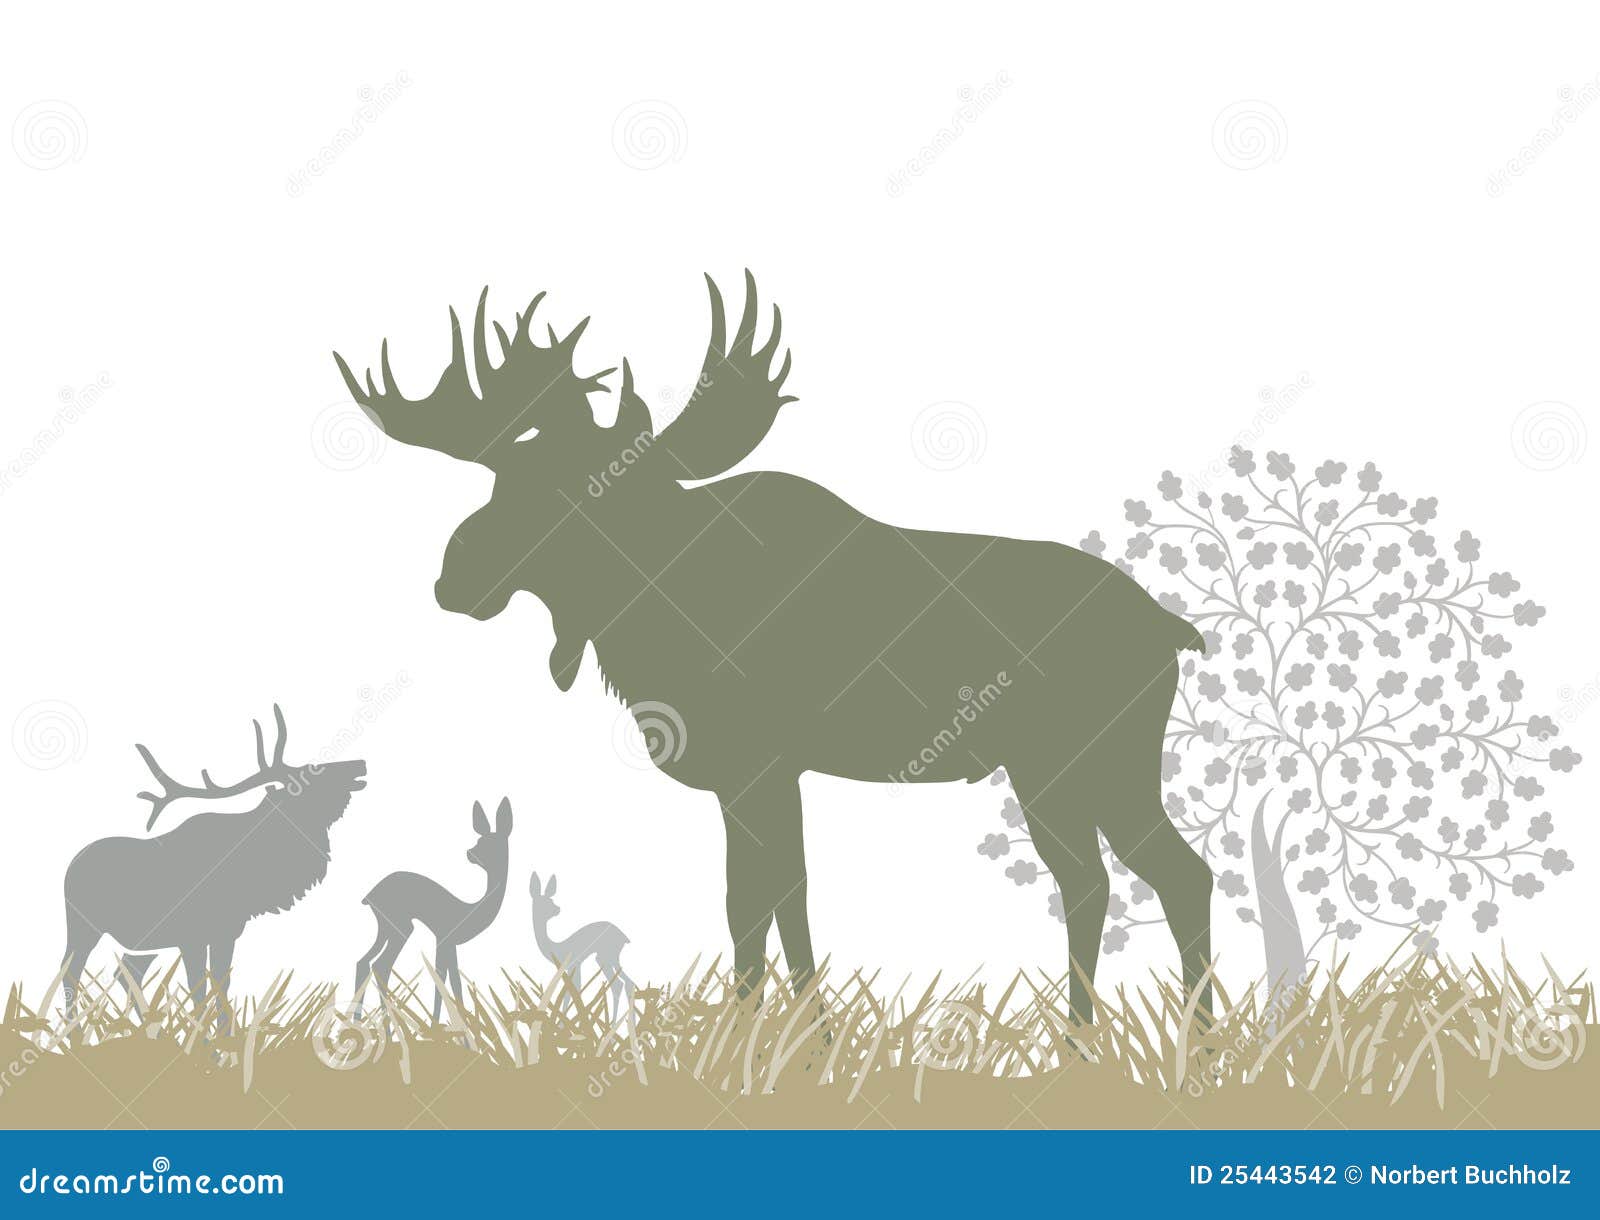 elk and deer by tree